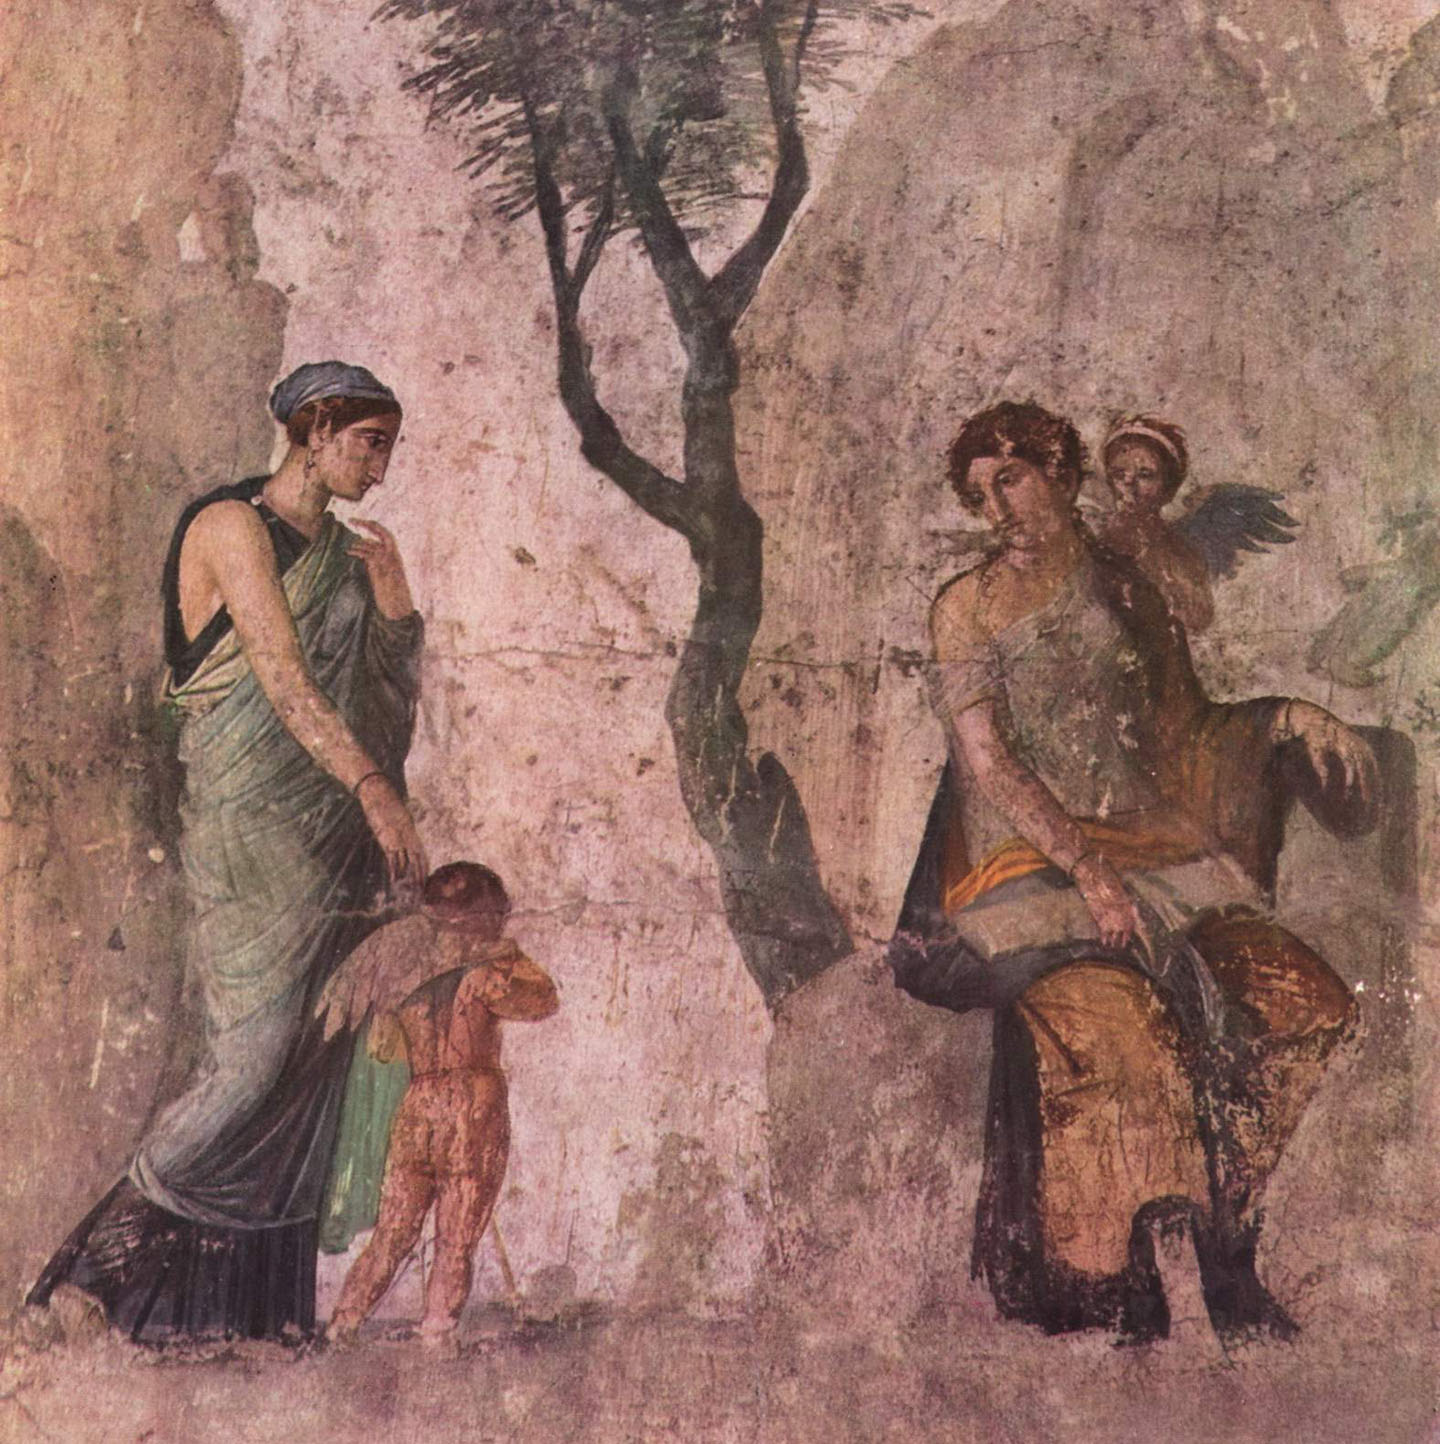 Một trinh nữ dắt thần tình yêu Eros đang giàn giụa nước mắt về gặp mẹ là nữ thần Venus. Bà phạt ông vì khơi dậy khao khát của vị thần chiến tranh Mars với một phụ nữ khác. Bức tranh “Eros Punished” (Thần Eros bị phạt) của một họa sĩ người Pompeii, khoảng năm 25 trước Công Nguyên. Bảo tàng Khảo cổ Quốc gia Naples, nước Ý. (Ảnh: Tài liệu công cộng)